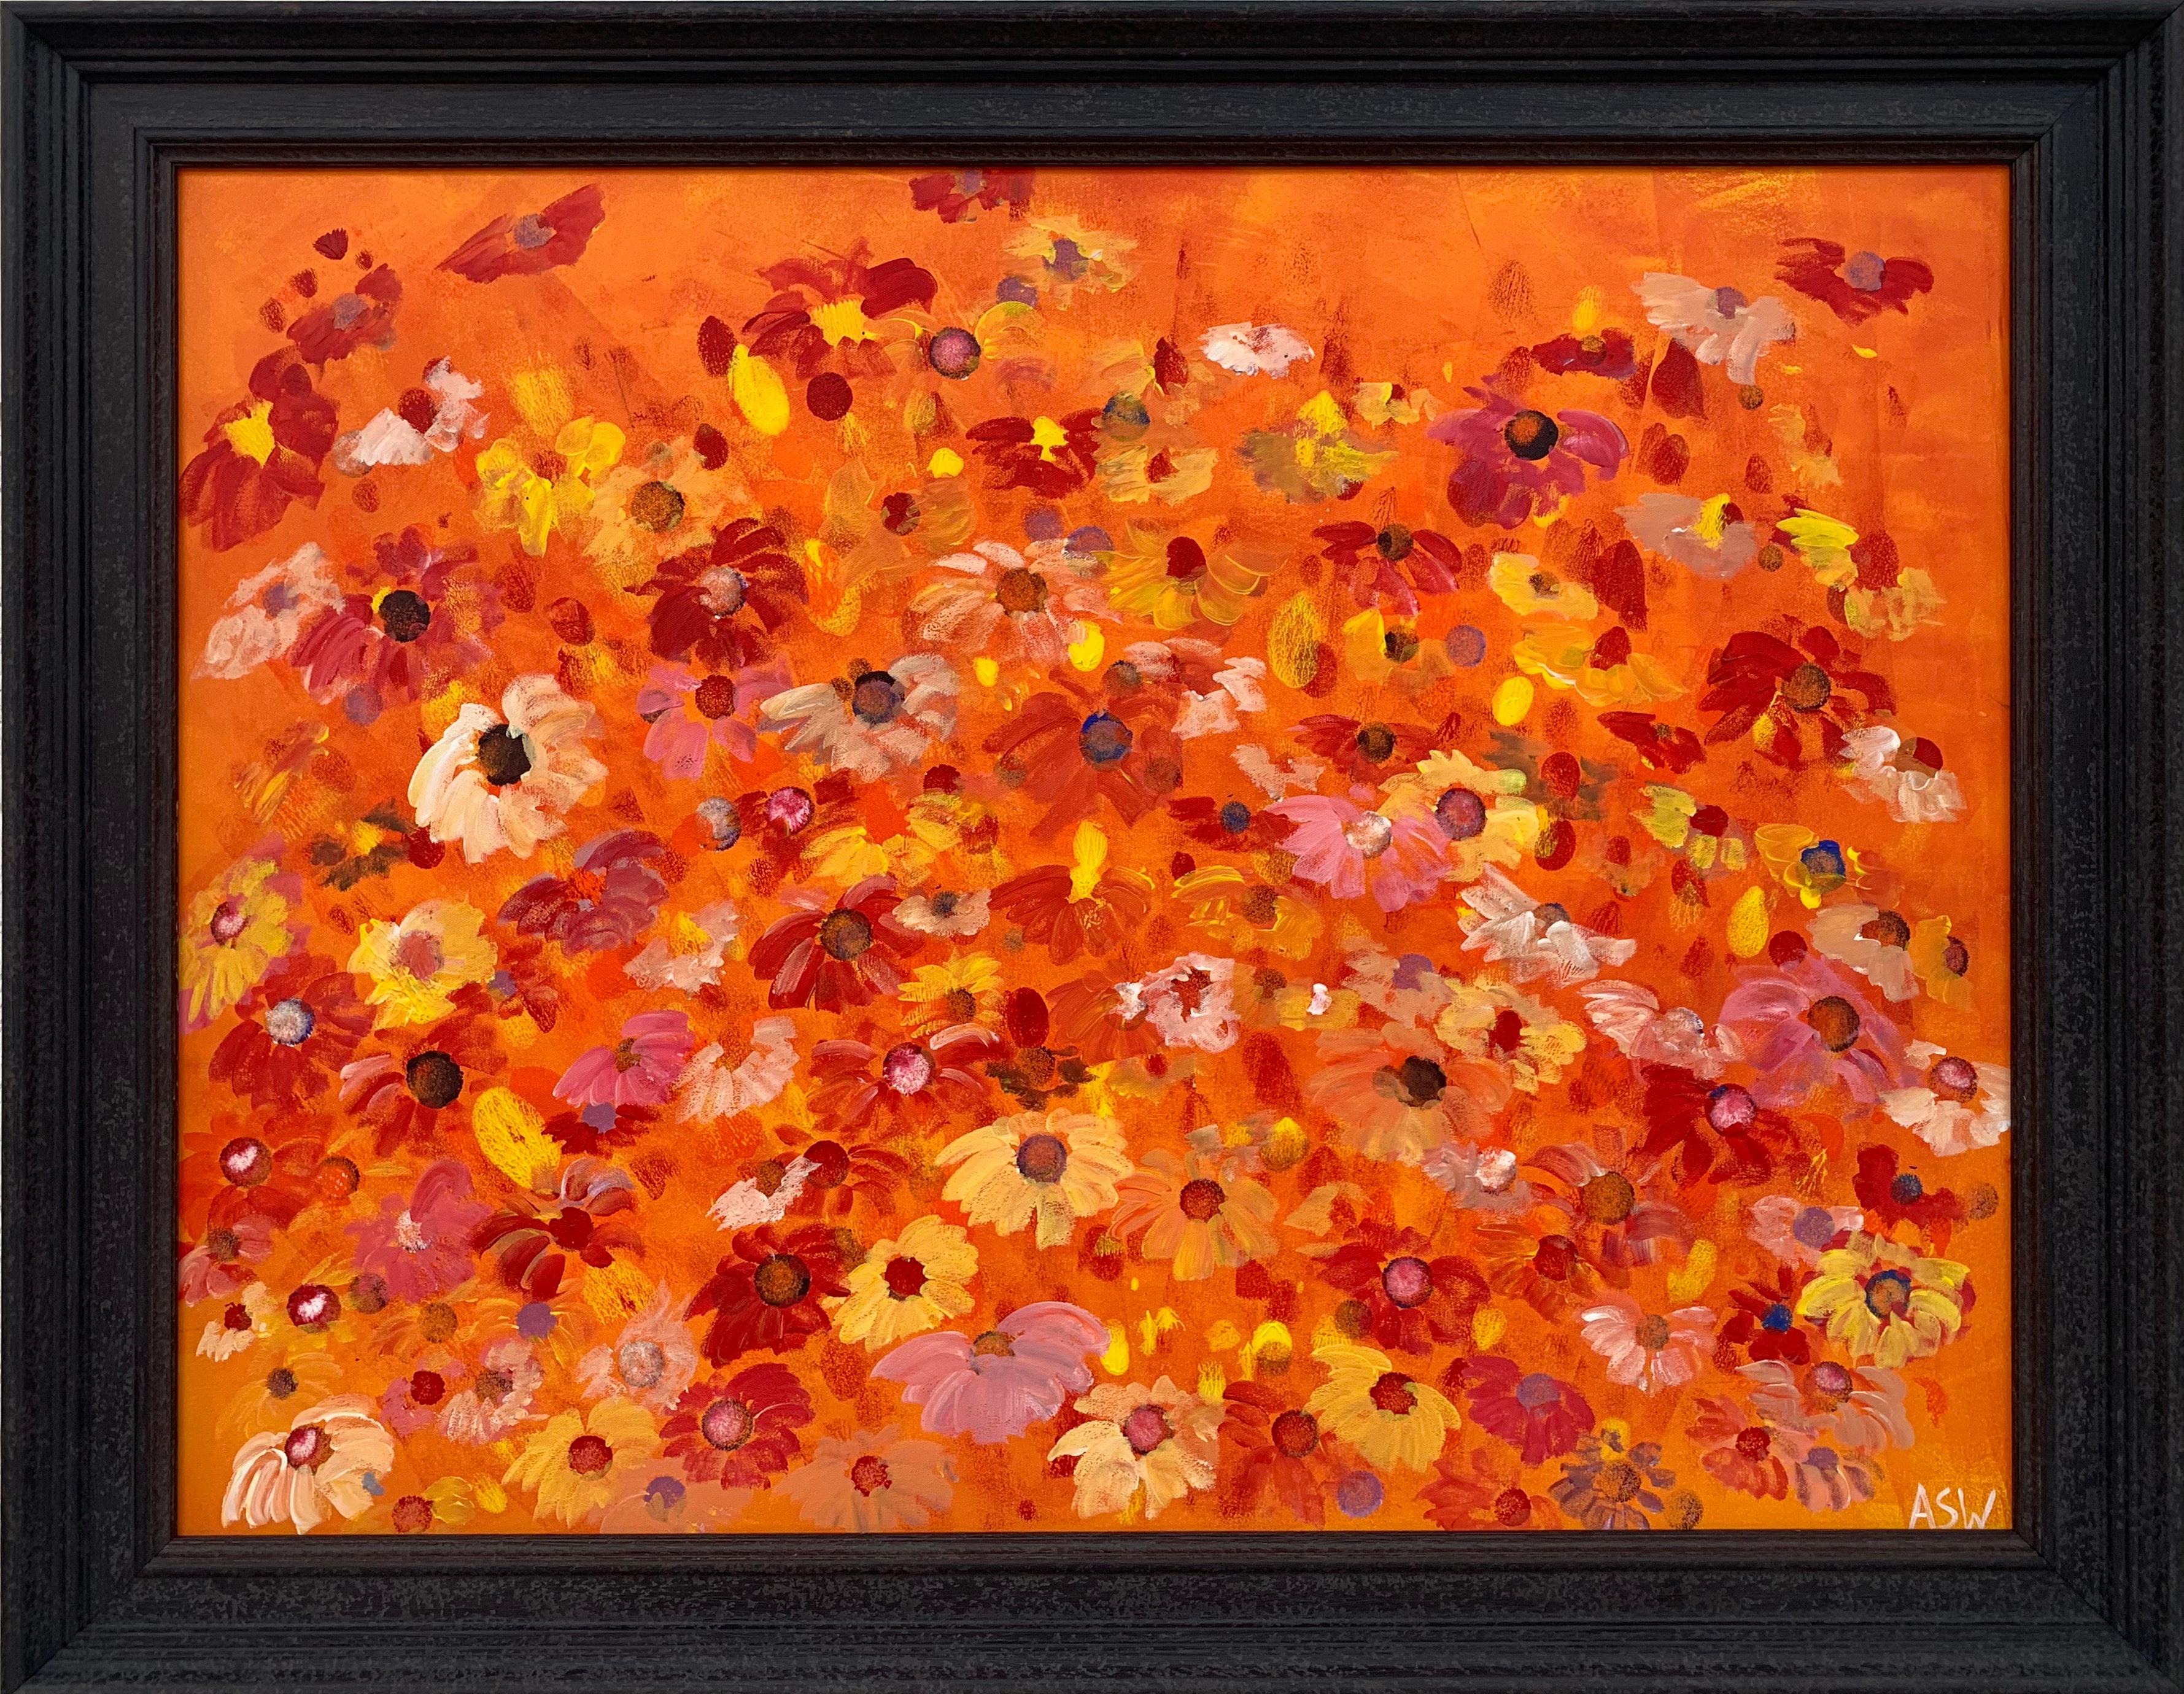 Peinture abstraite de fleurs sauvages rouges et roses sur orange de l'artiste contemporain britannique